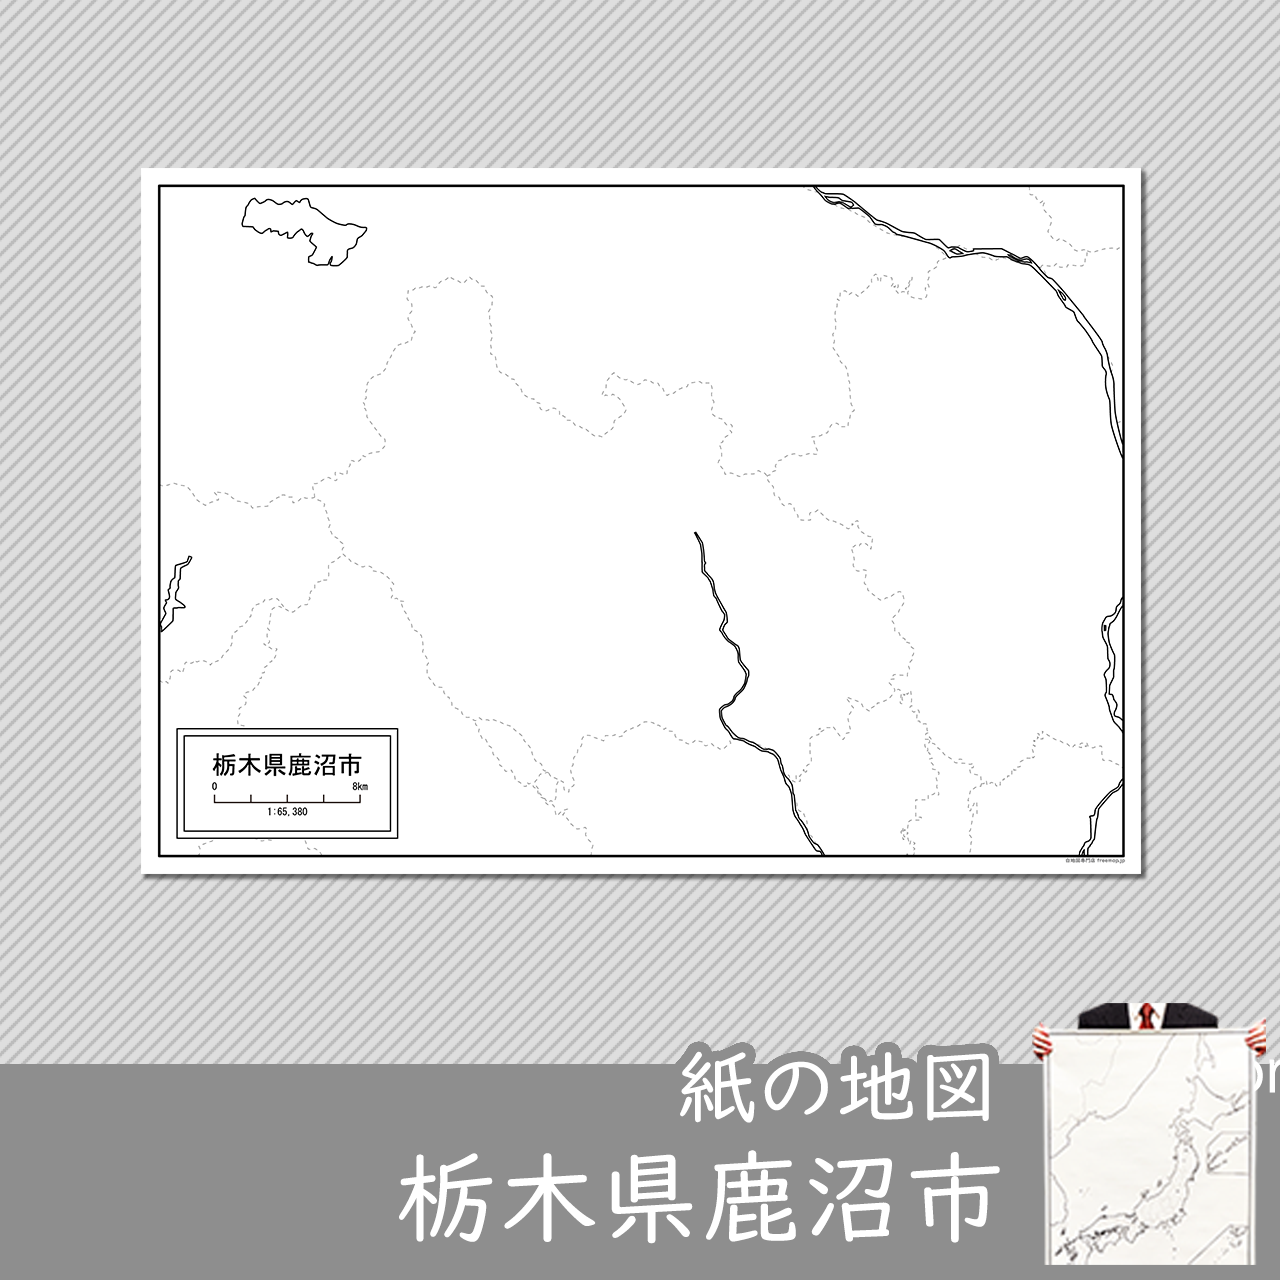 鹿沼市の紙の白地図のサムネイル